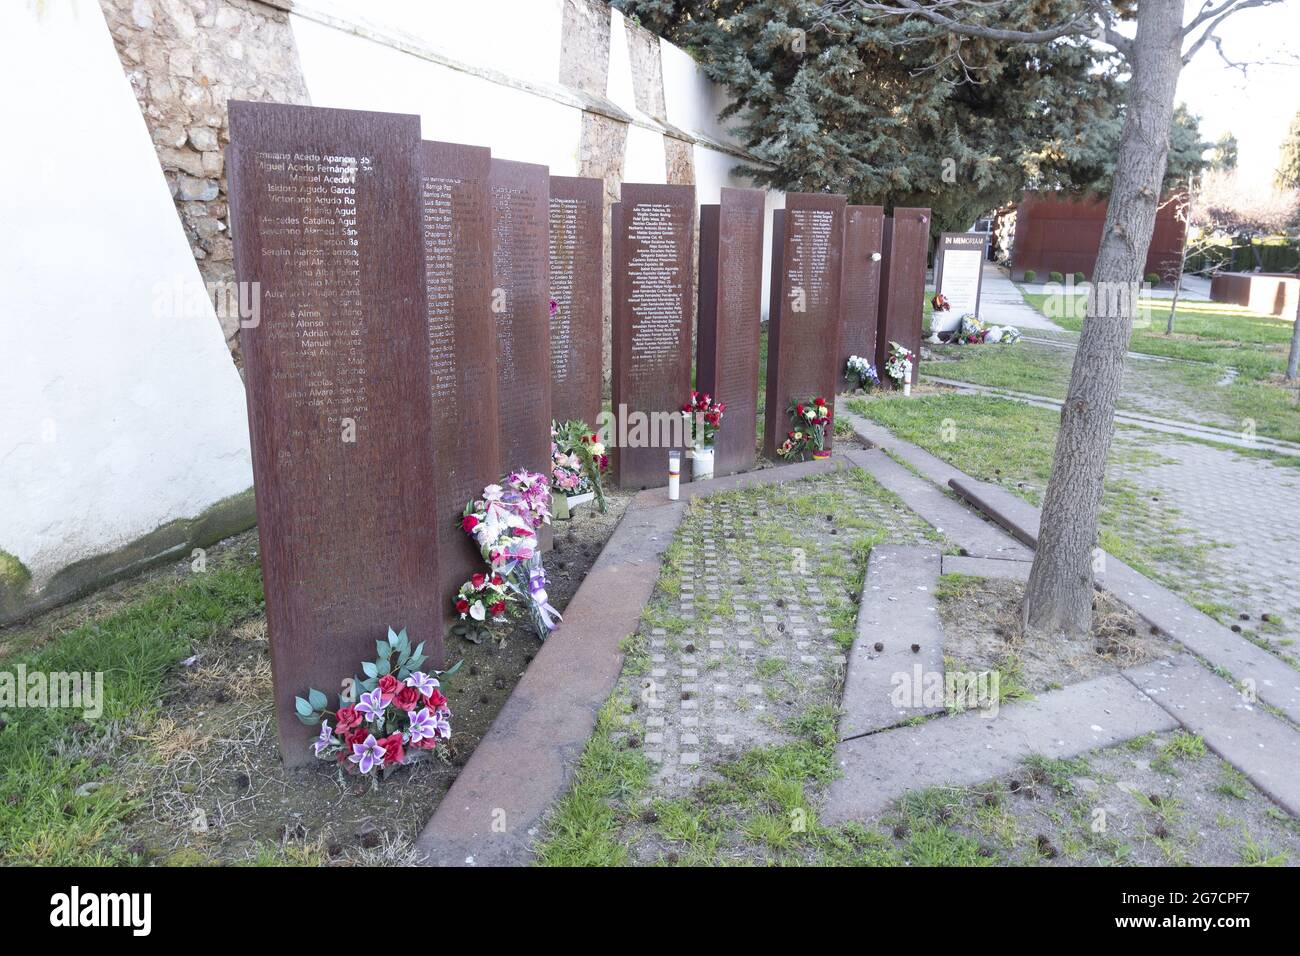 CACERES, SPAGNA - Mar 14, 2021: Monumento in memoria dei cittadini che sono stati vittime delle loro idee repubblicane durante la guerra civile spagnola e il posto Foto Stock